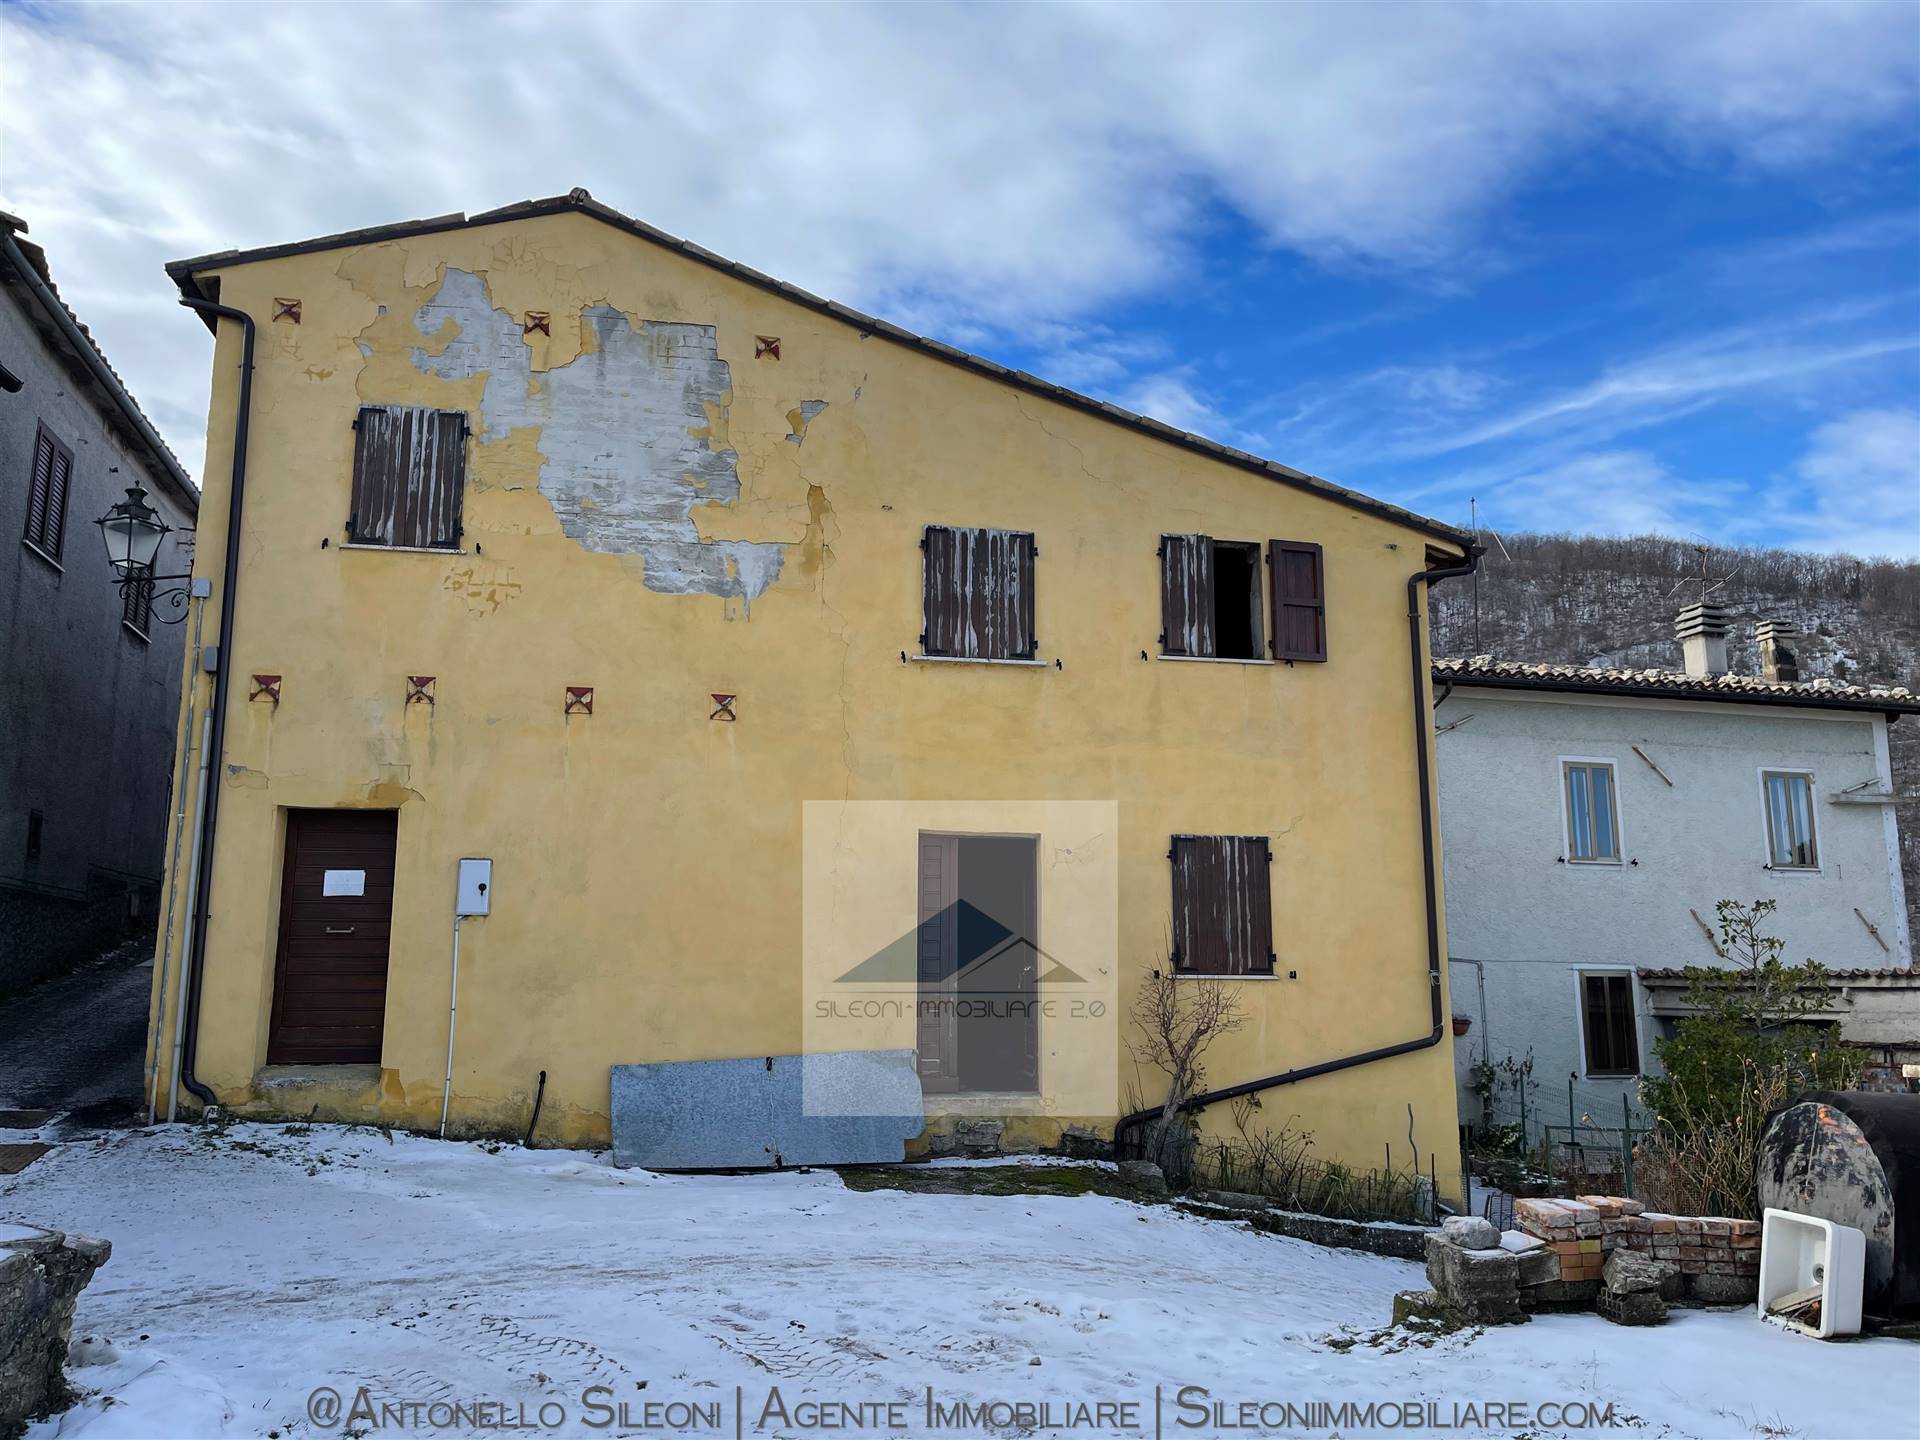 Appartamento in vendita a Pieve Torina, 6 locali, zona Zona: Giulo, prezzo € 35.000 | CambioCasa.it